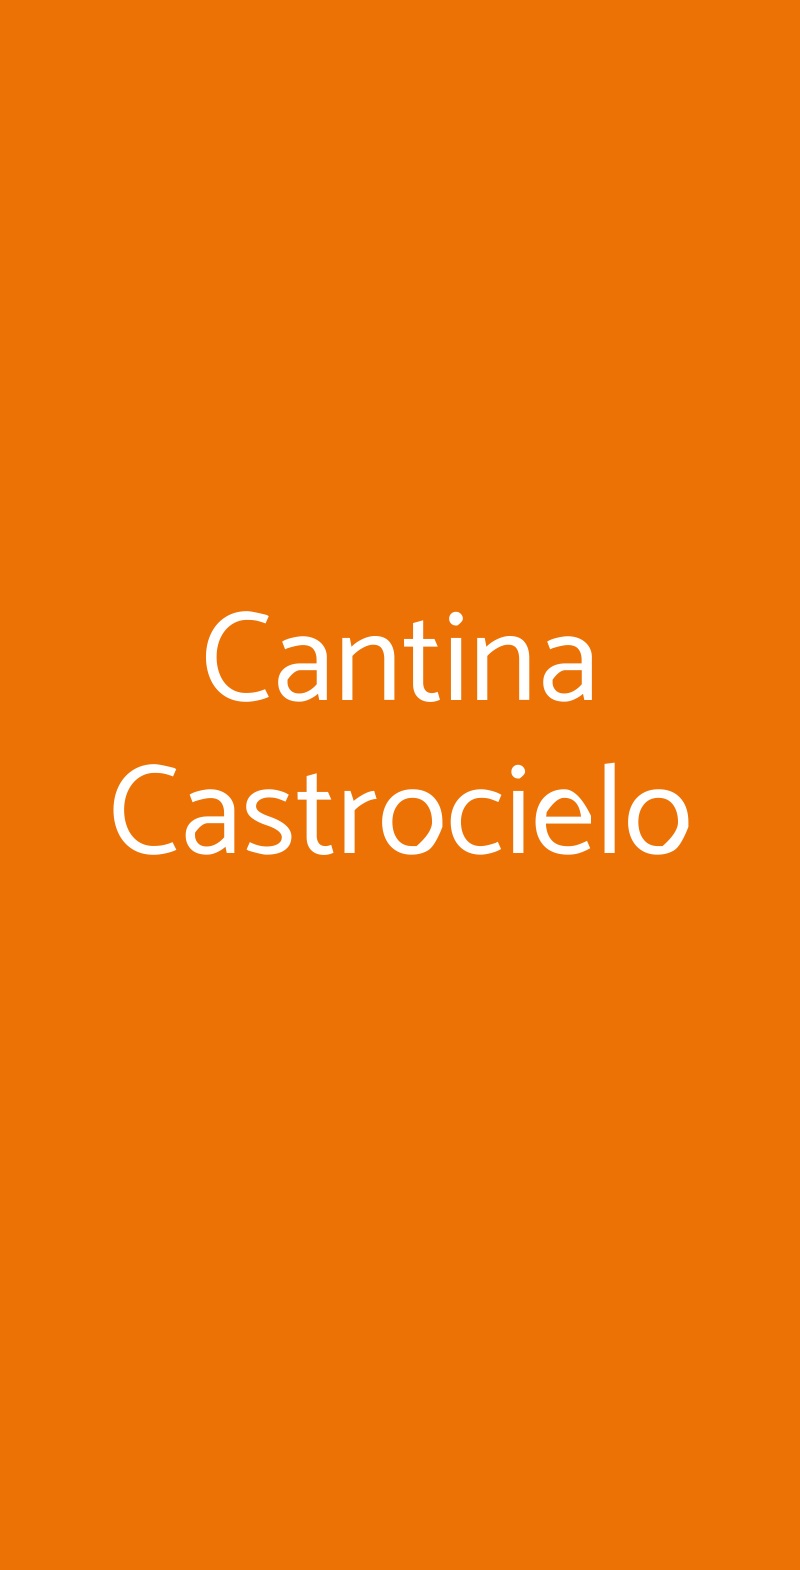 Cantina Castrocielo Roma menù 1 pagina